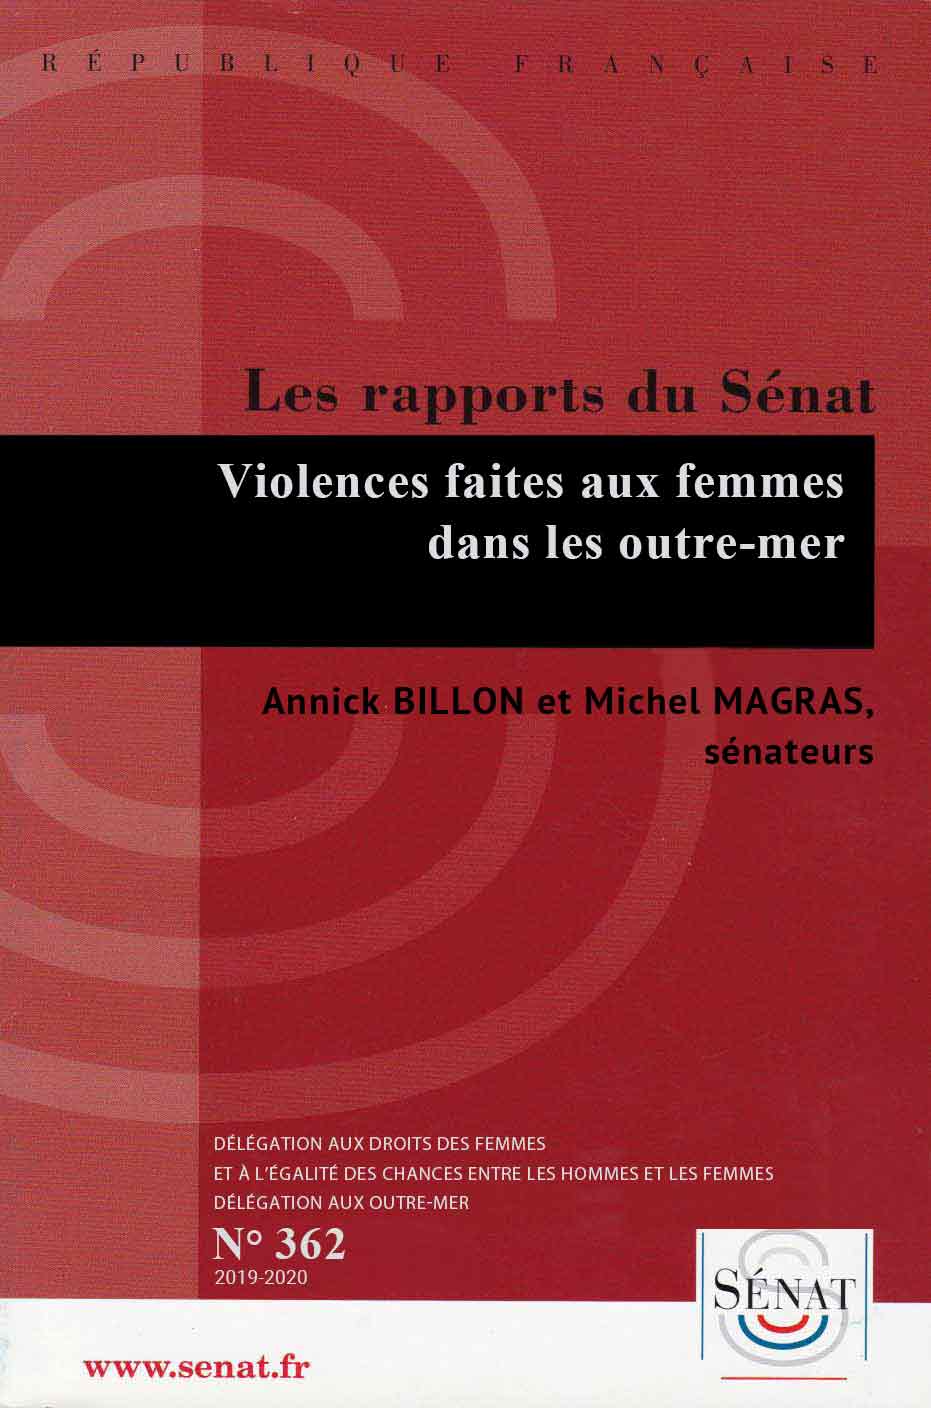 L’ENGAGEMENT DES FEMMES OUTRE-MER : UN LEVIER CLÉ DU DYNAMISME ÉCONOMIQUE<br />
Rapport d’information n°348<br />
21/02/2019, de Annick Billon et Michel Magras 